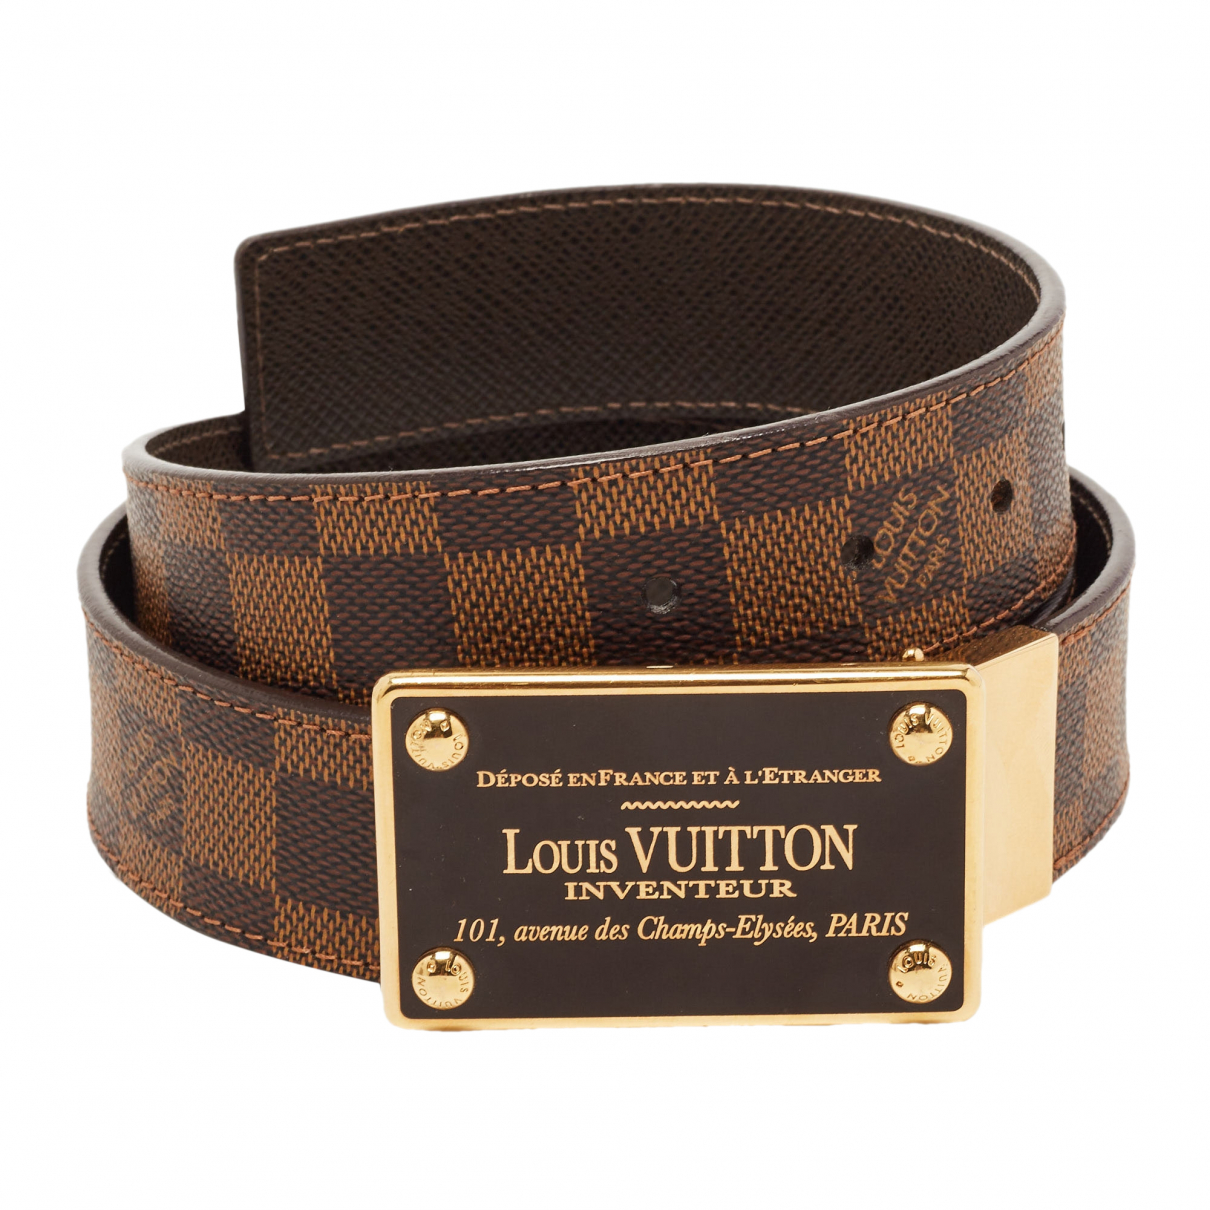 LOUIS VUITTON Belts Louis Vuitton Leather For Male 90 Cm for Men